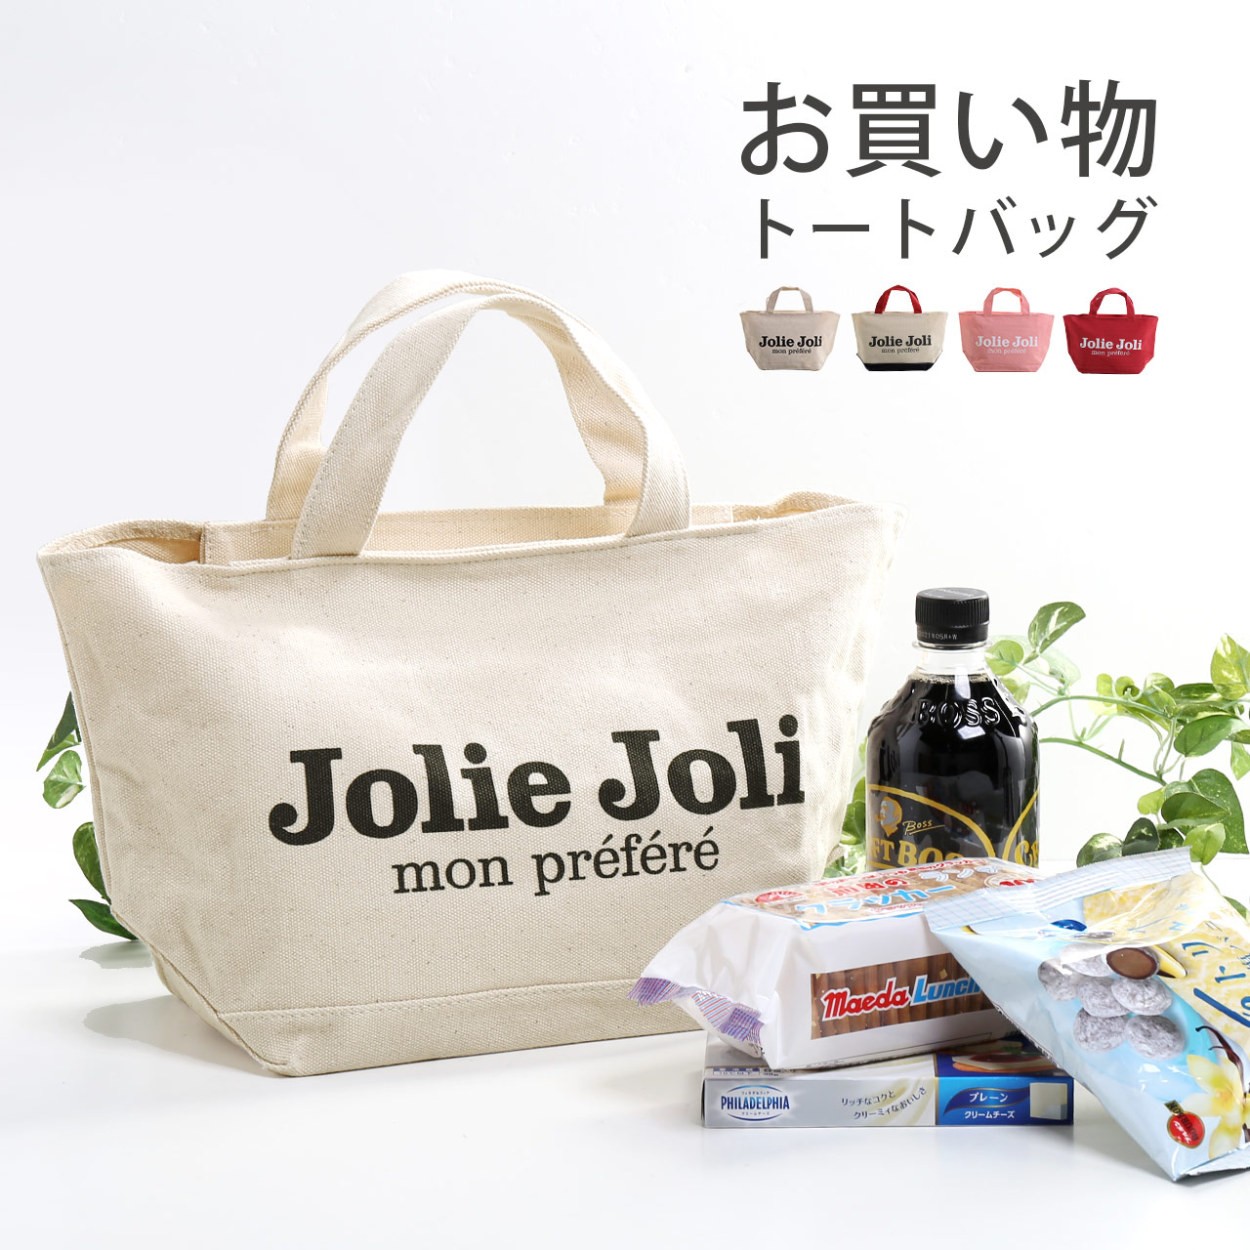 エコバッグ おしゃれ コンビニ マイバッグ ブランド Jolie Joli ショッピングトート 小さめ 可愛い かわいい バッグ キャンバスバッグ (07000377-cc-1r)